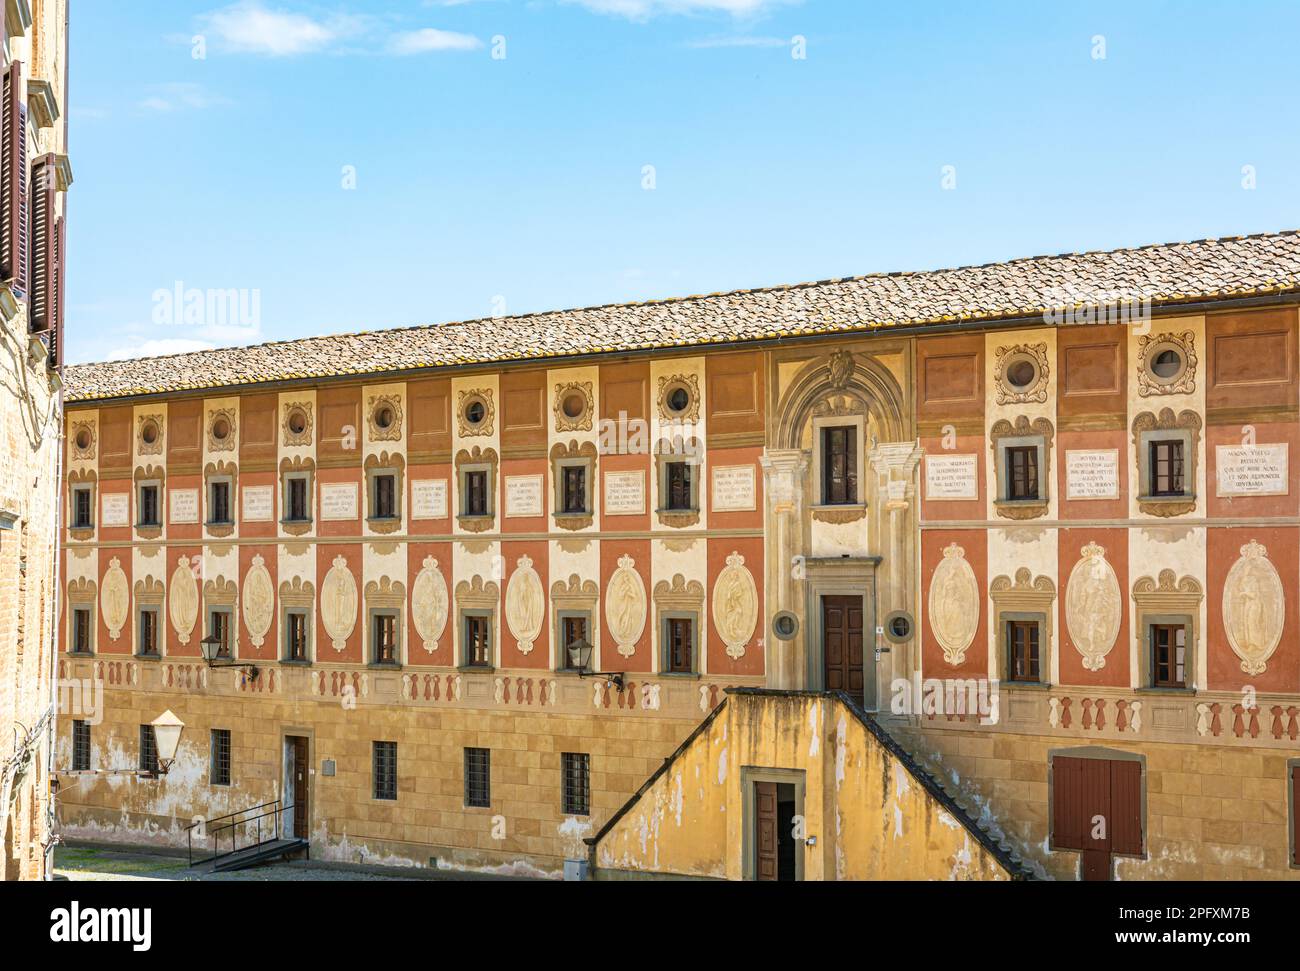 Facciata dell'antico Seminario episcopale nel centro storico di San Miniato, provincia di Pisa - regione Toscana, Italia, Europa Foto Stock